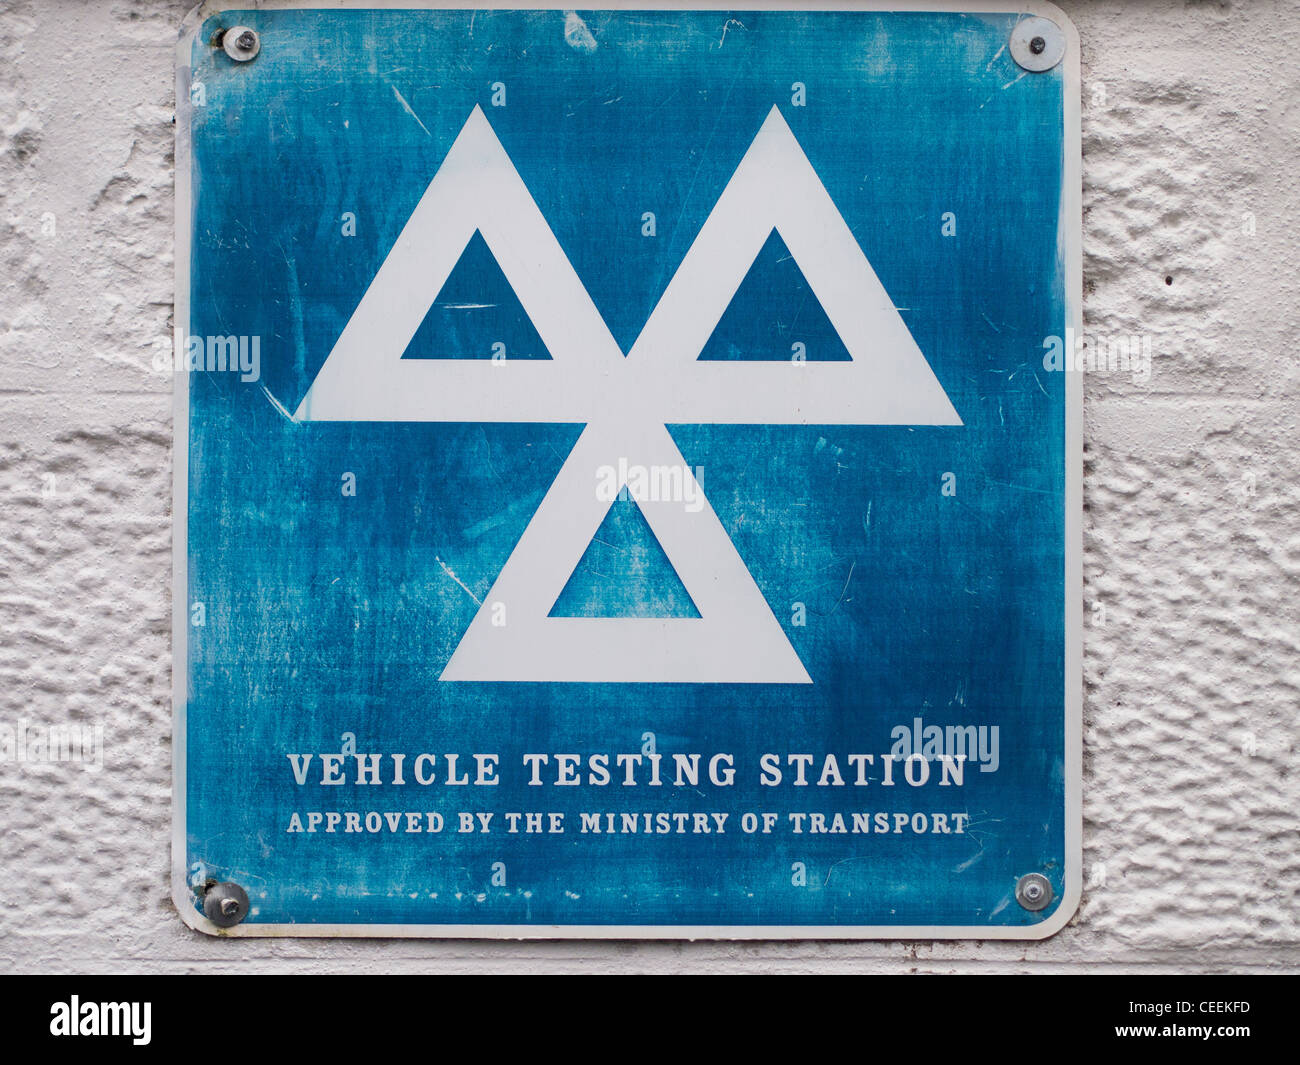 Vehicle Testing Station Sign, UK Stock Photo